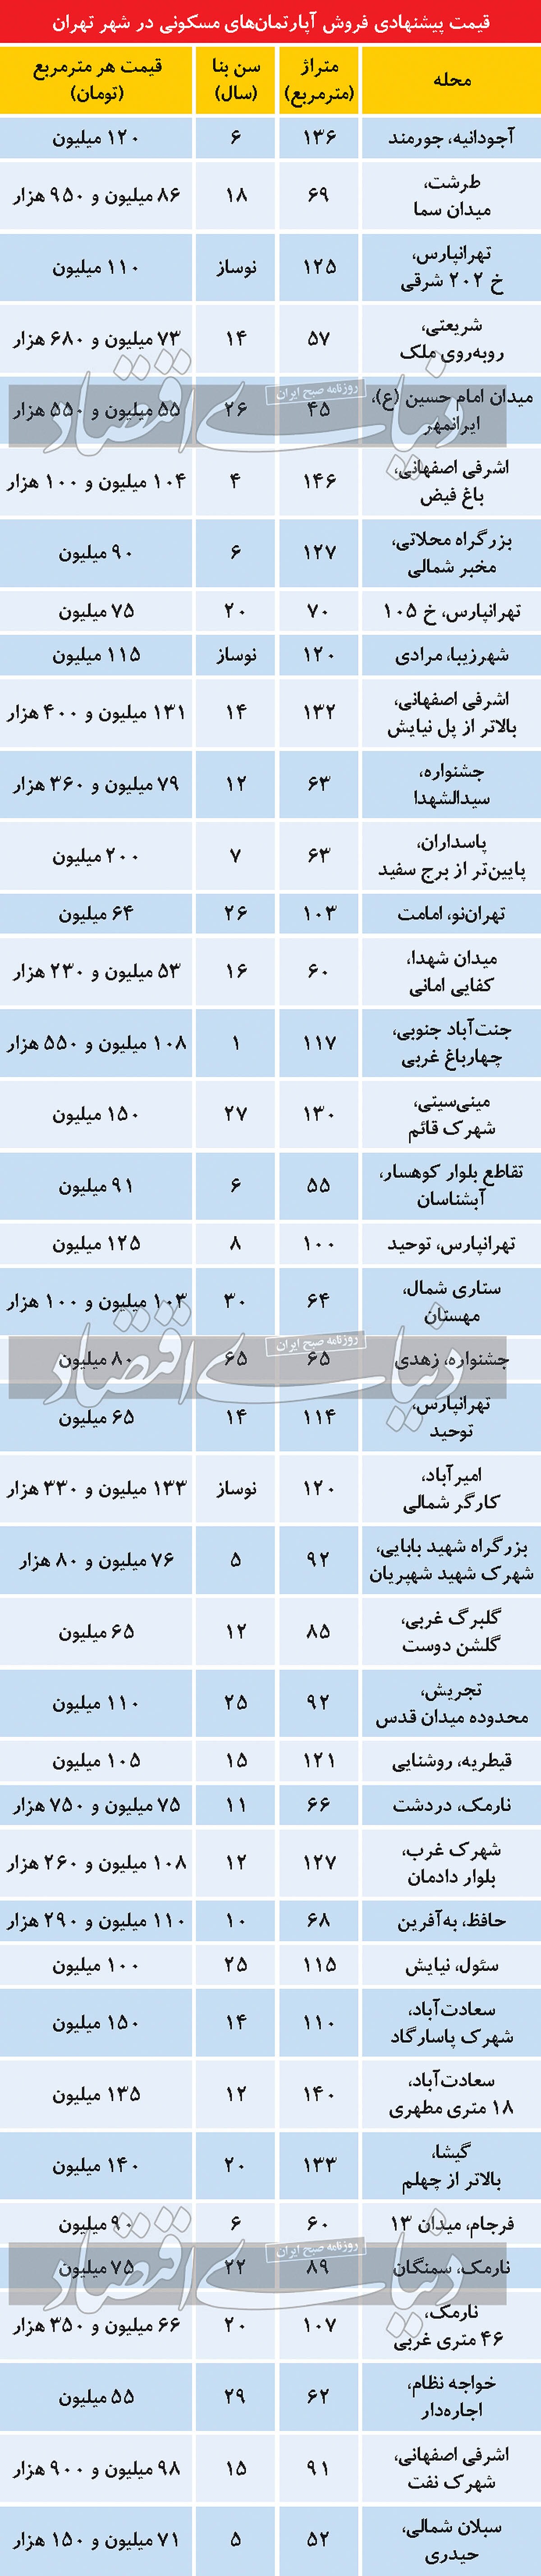 جدول قیمت آپارتمان: حال و روز غریب بازار مسکن تهران